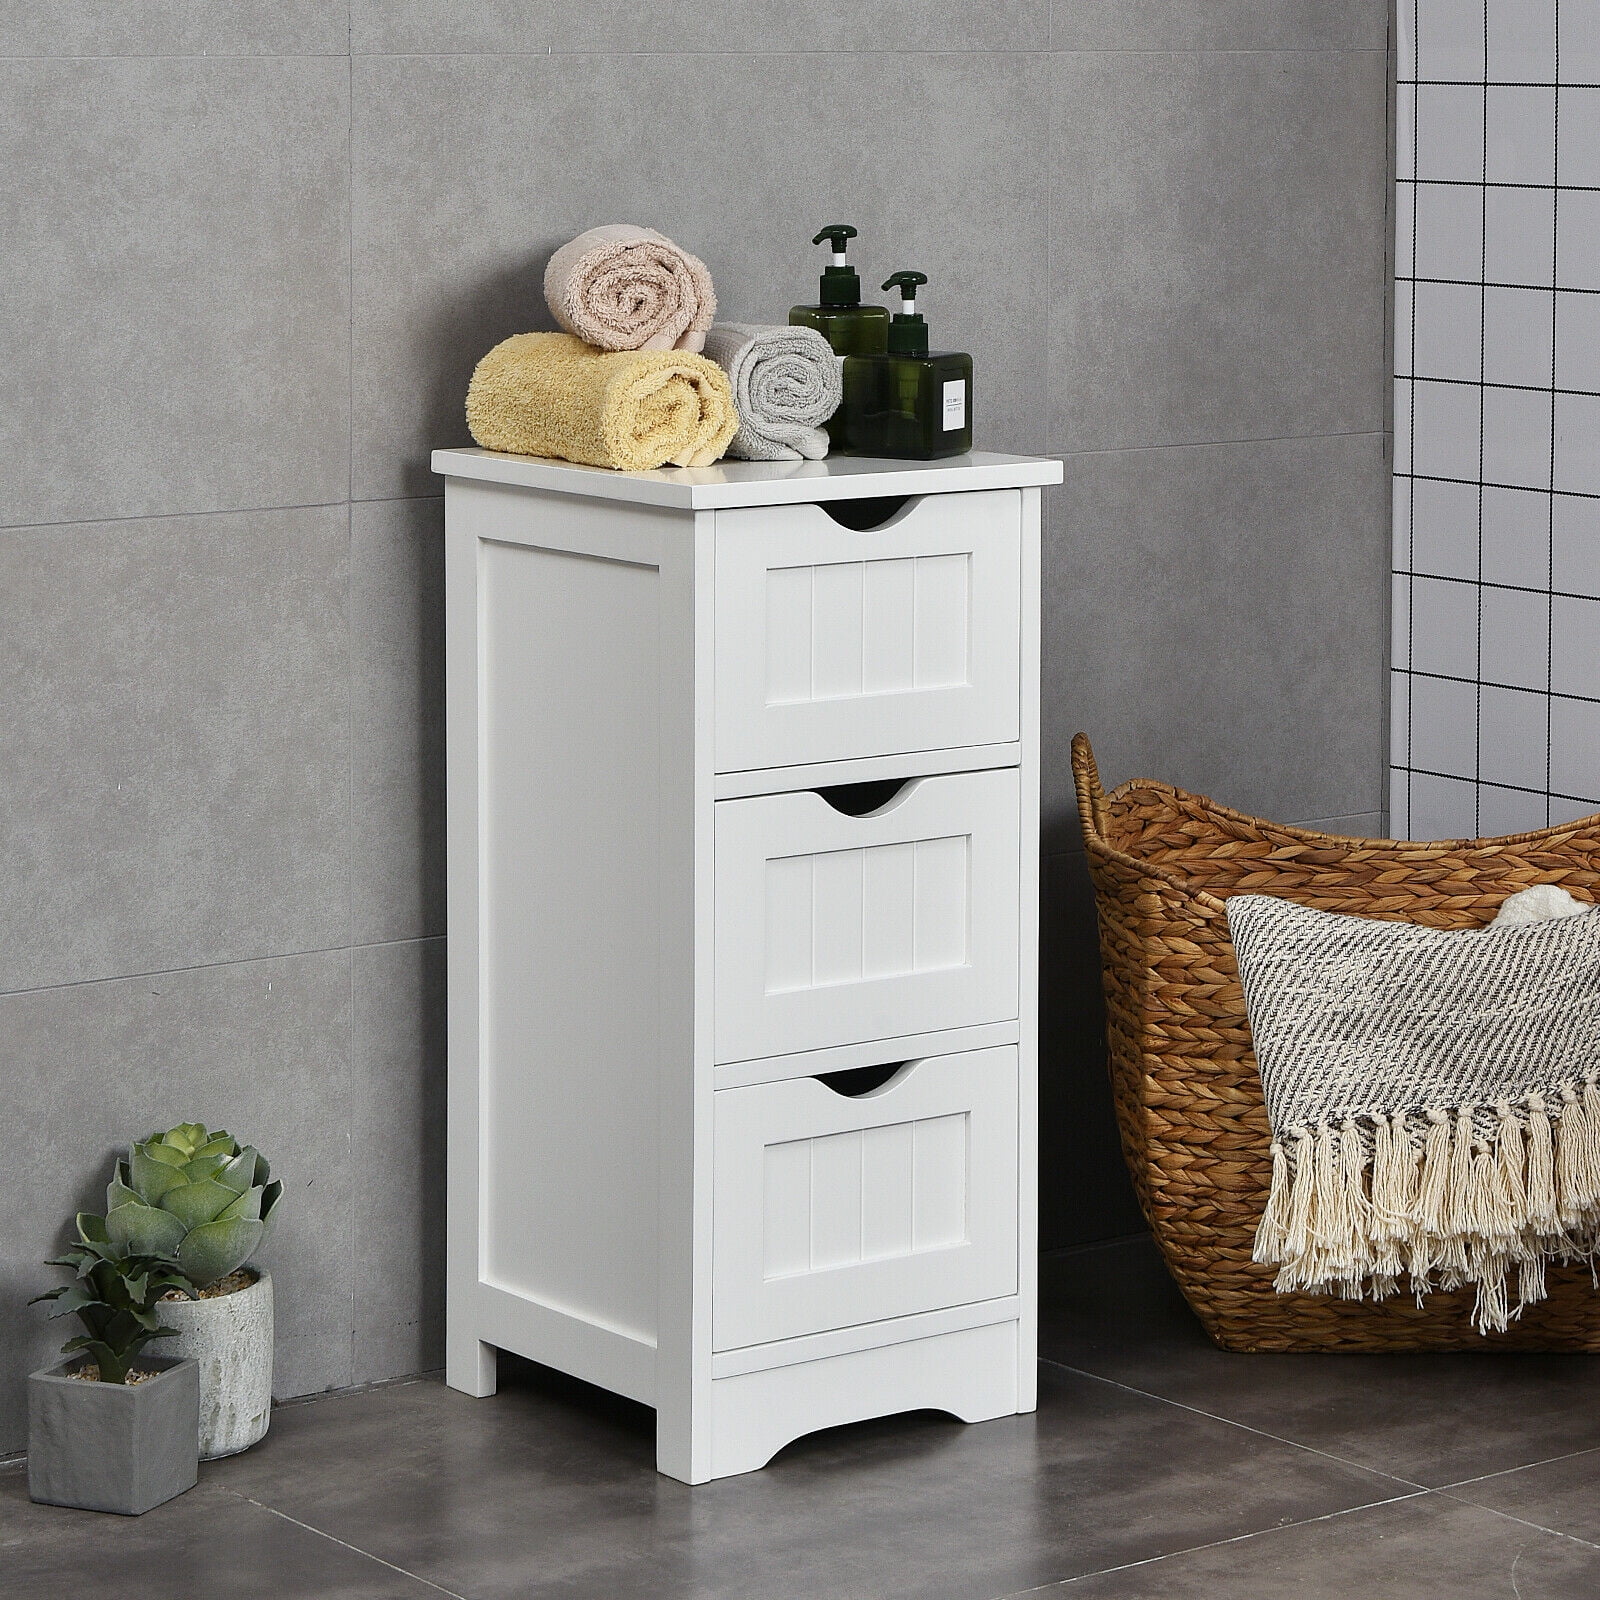 Gymax Bathroom Floor Cabinet Wooden Freestanding Storage Side Organizer ...